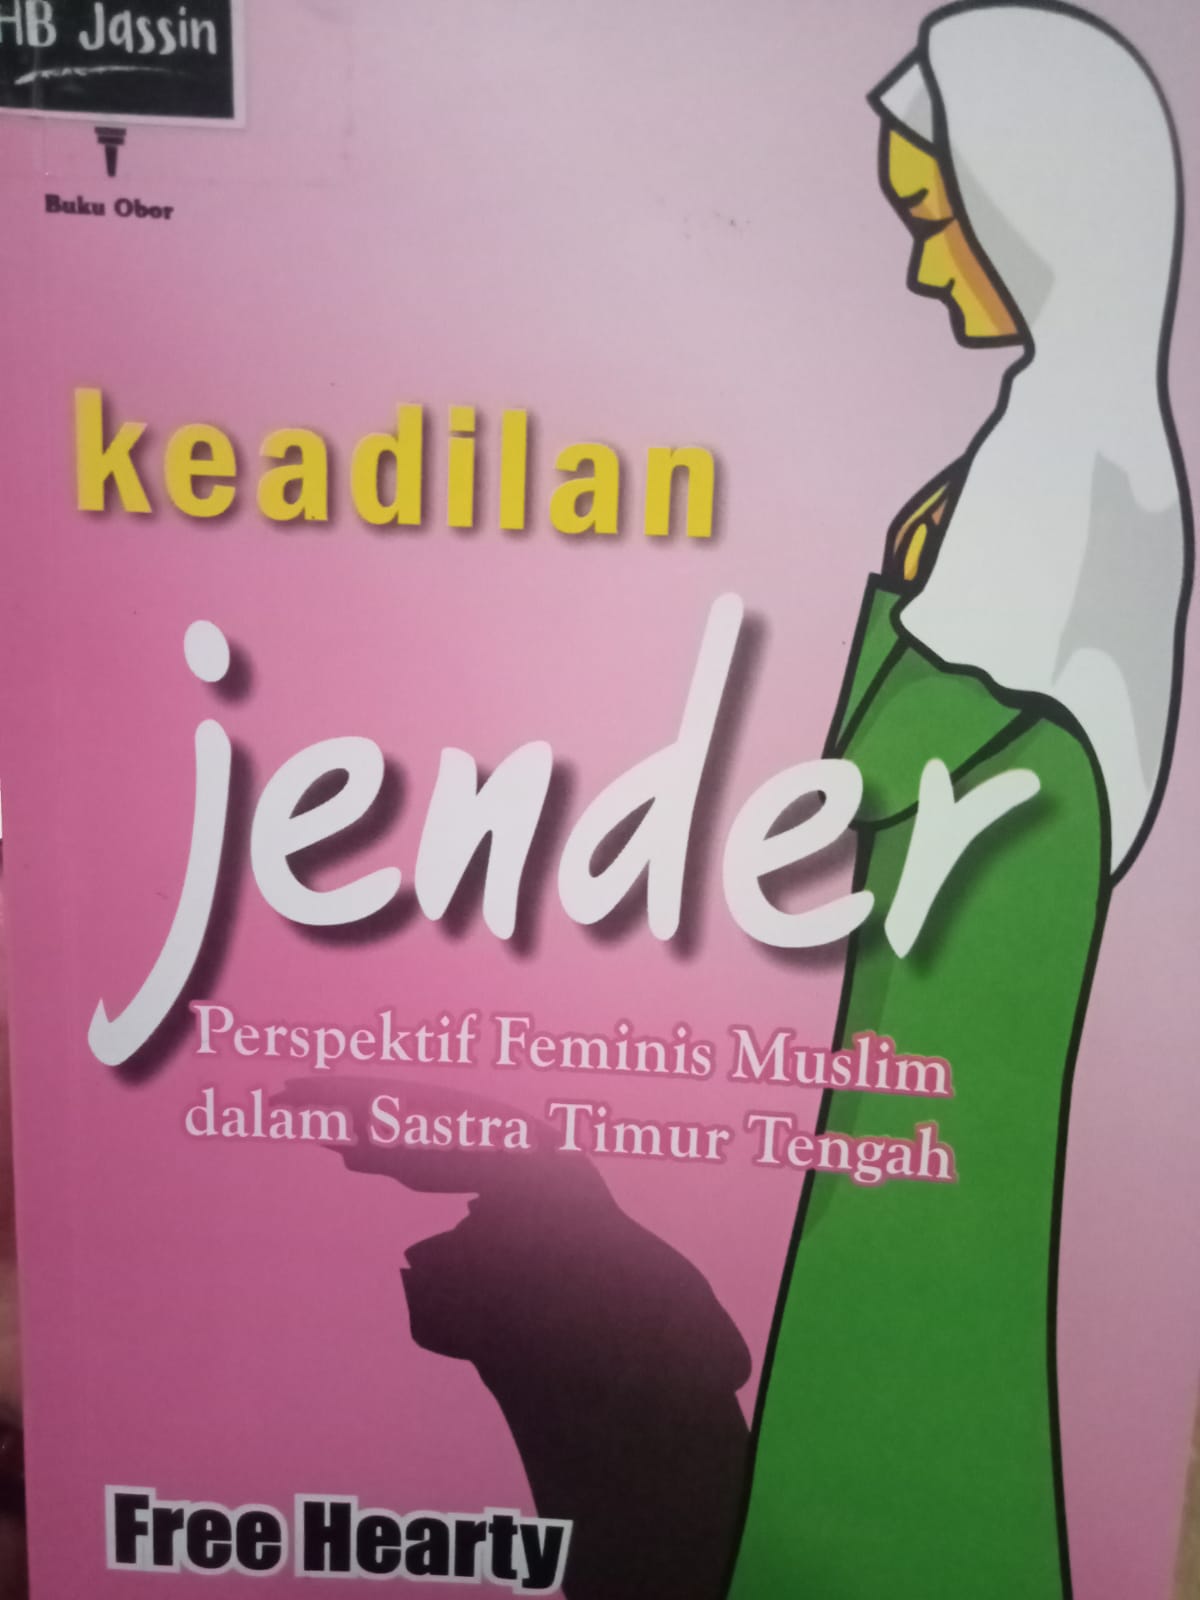 Keadilan jender :  perspektif feminim muslim dalam sastra timur tengah